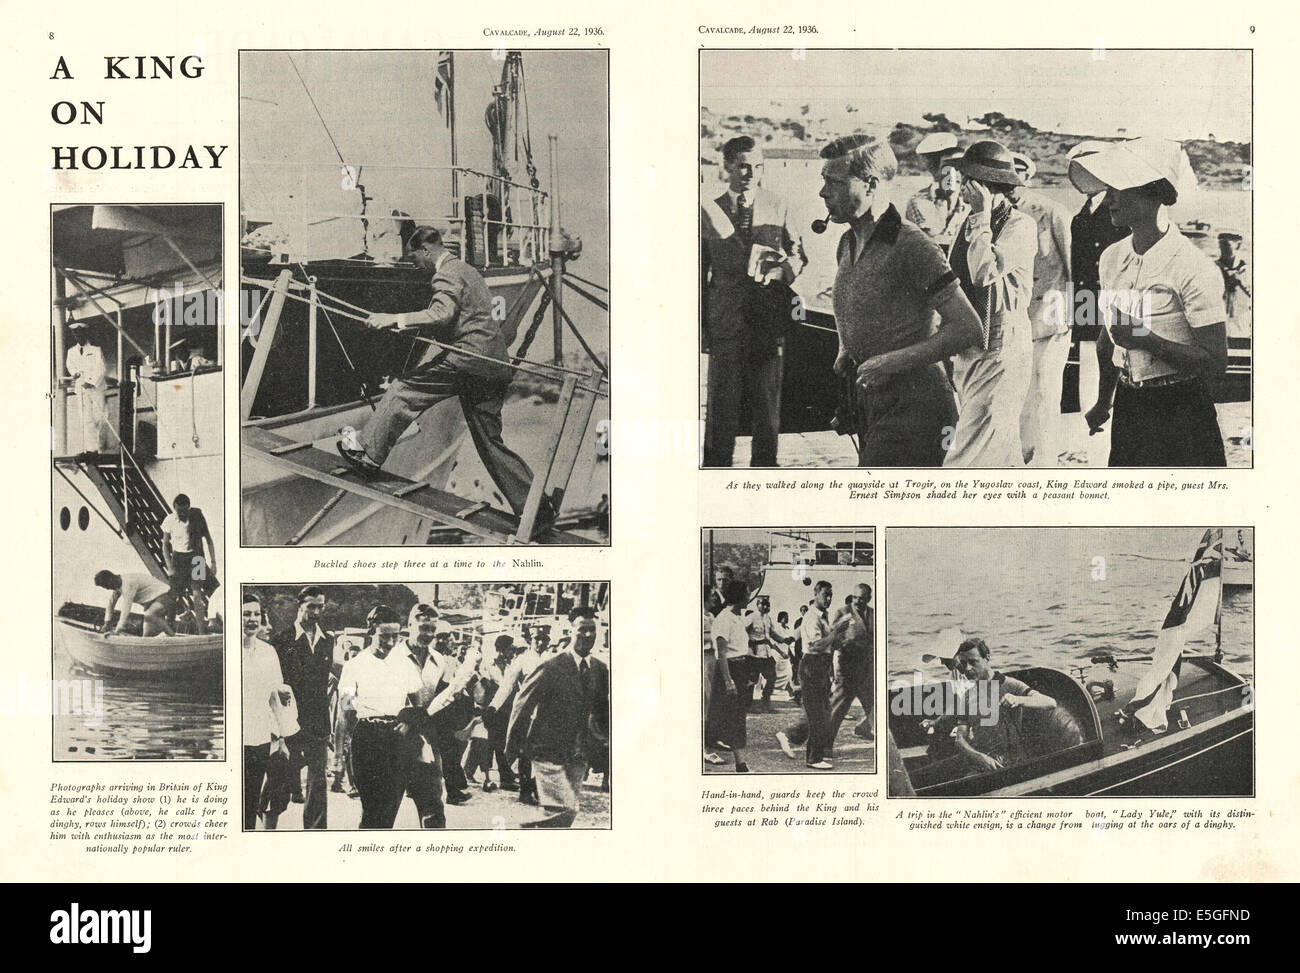 1936 Calvacade magazine le pagine 8 e 9 fotografie di Edoardo VIII e Wallis Simpson in vacanza in Iugoslavia Foto Stock